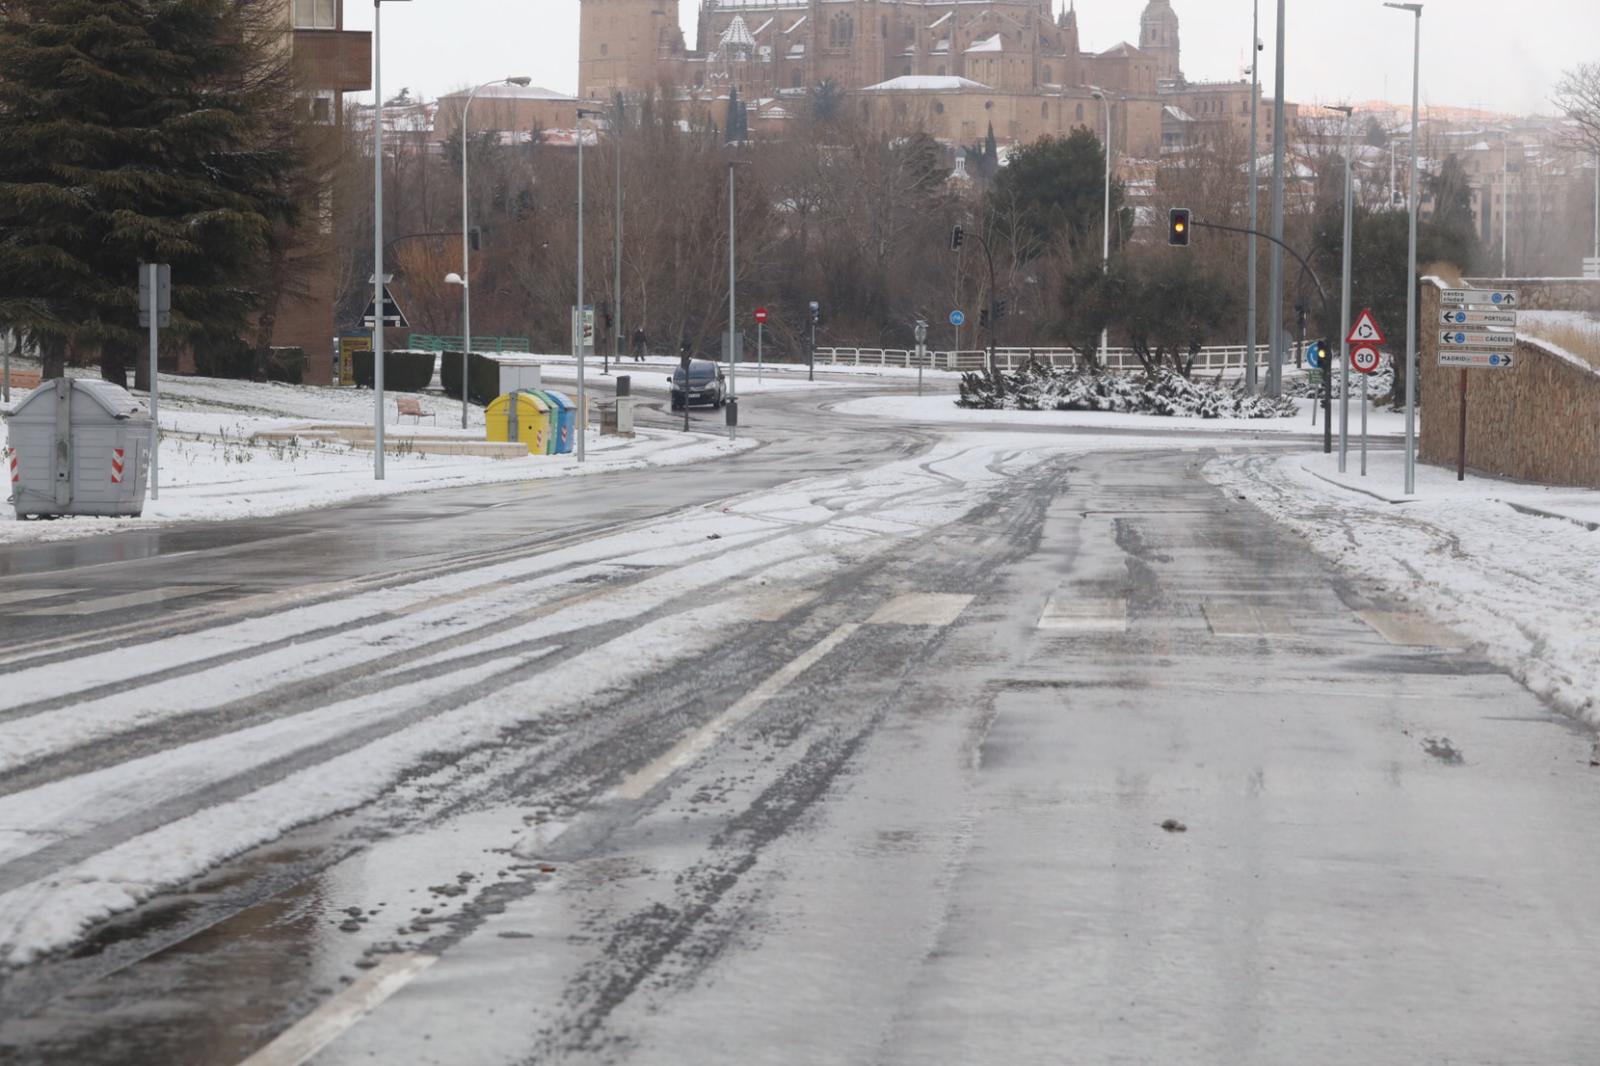 Hielo y nieve en Salamanca domingo (1)